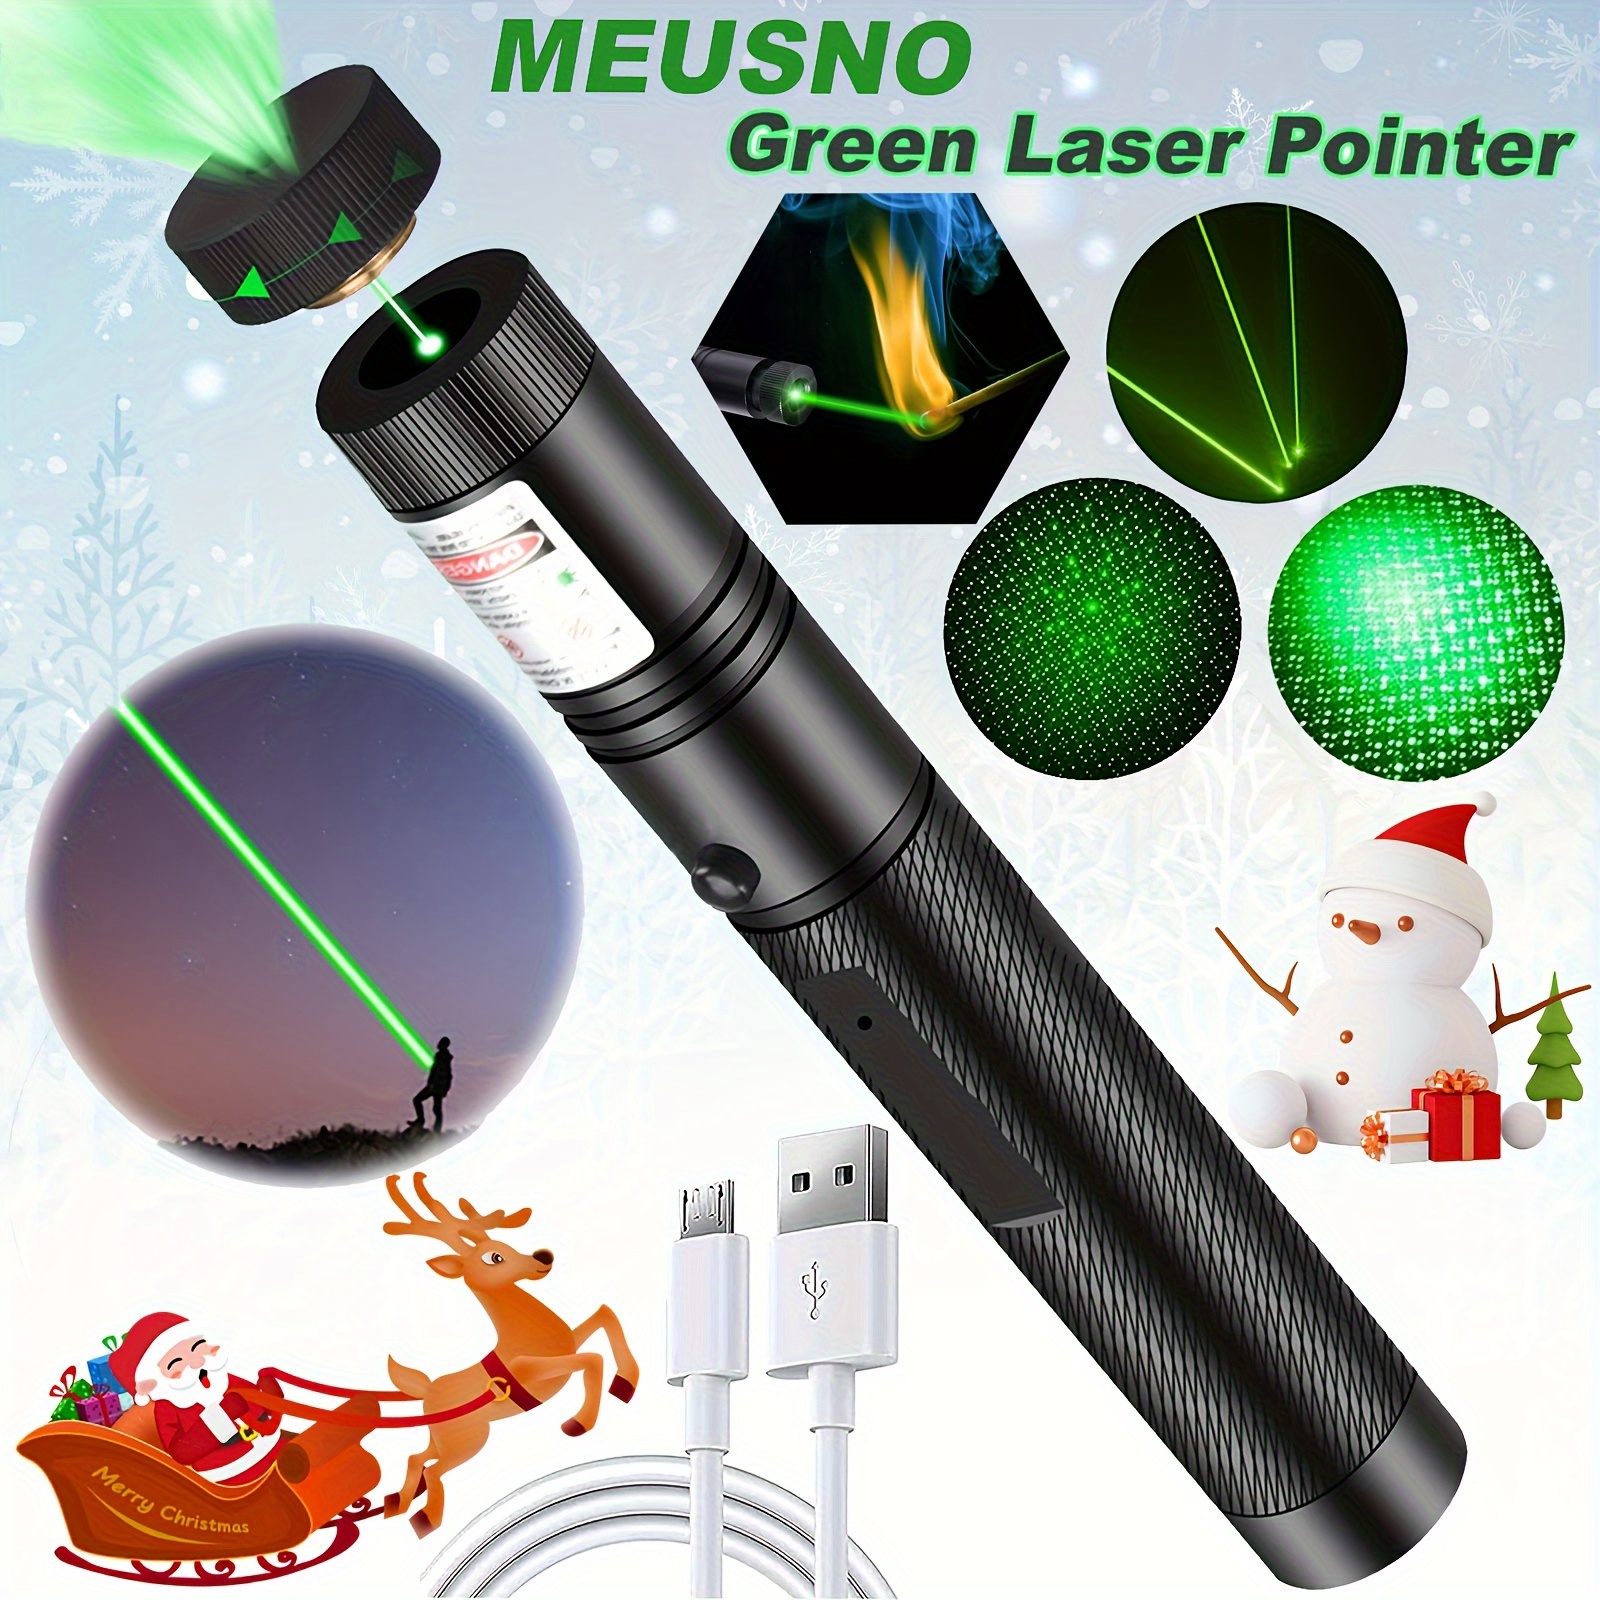 Stylo laser de couleur vert très puissant